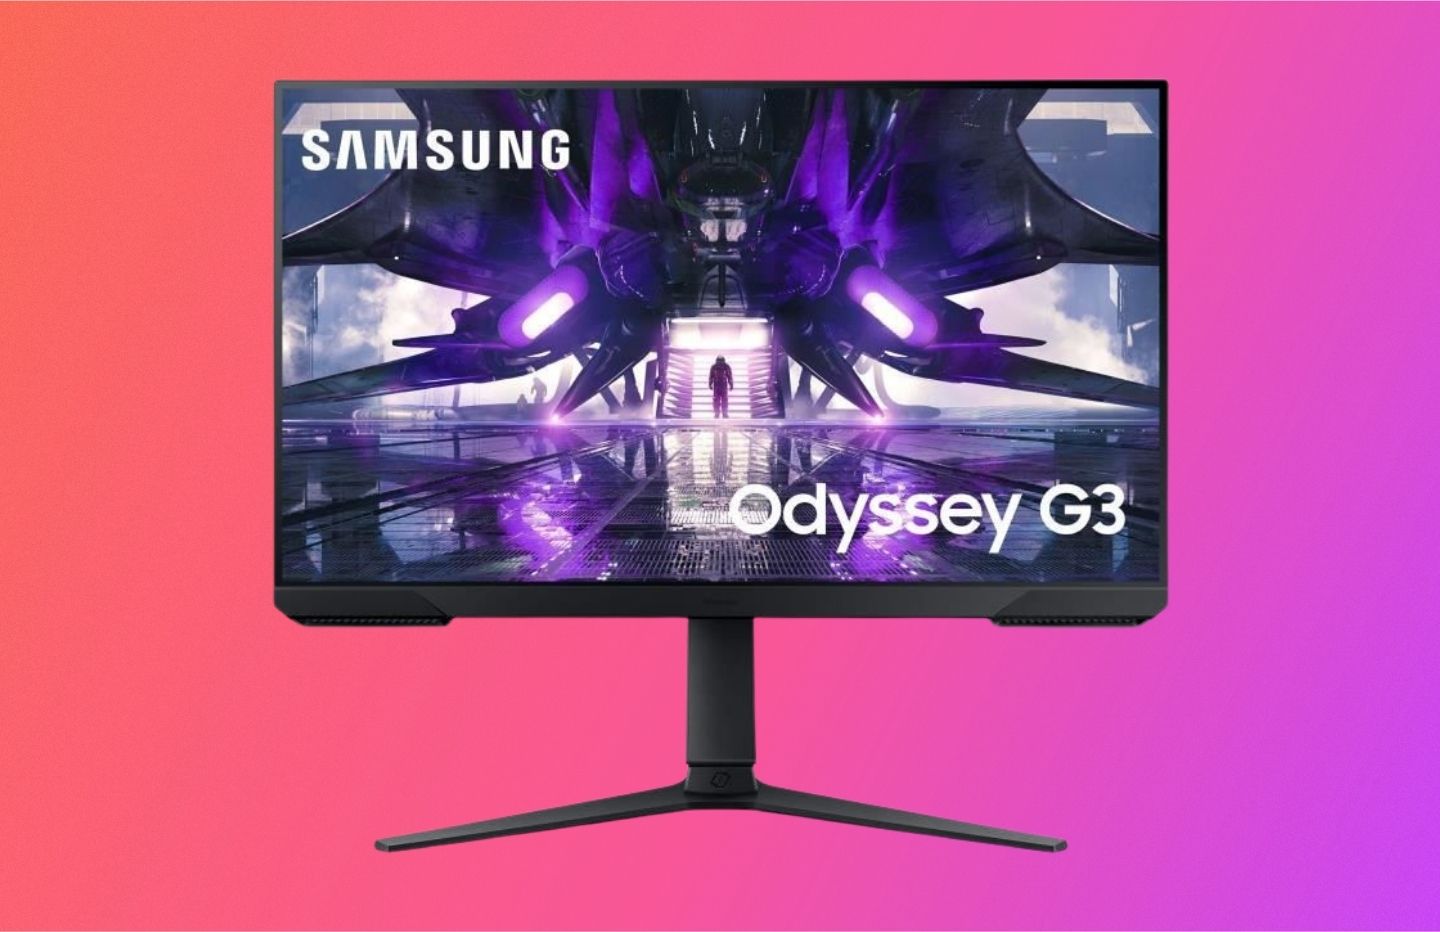 Le célèbre écran PC gamer Samsung Odyssey G3 profite d'une remise